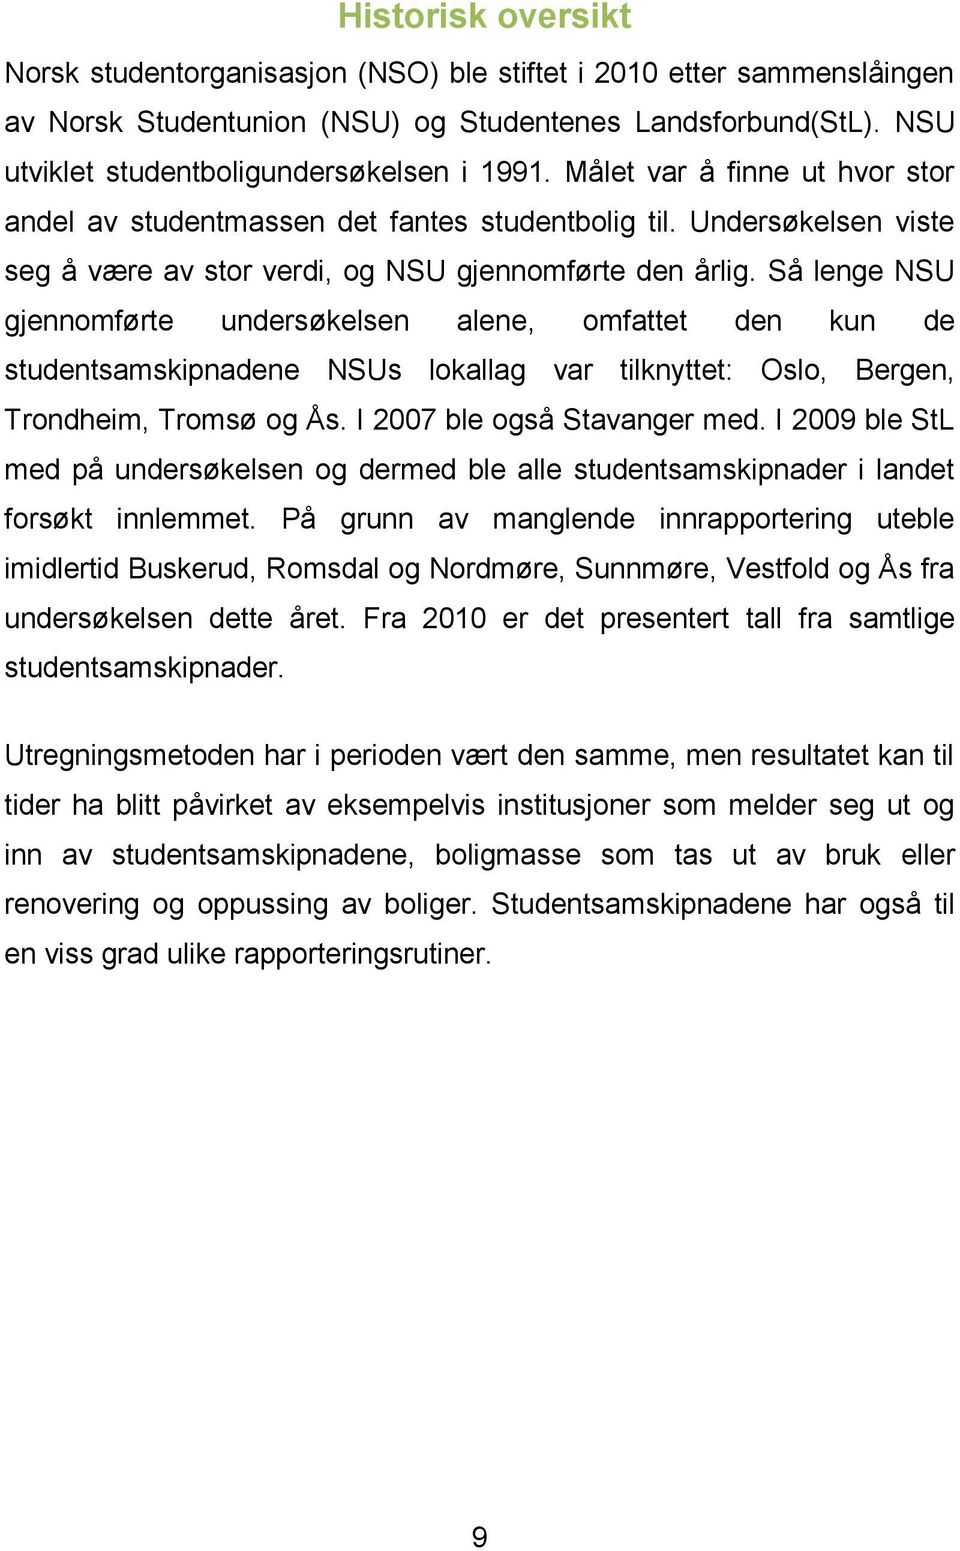 Så lenge NSU gjennomførte undersøkelsen alene, omfattet den kun de studentsamskipnadene NSUs lokallag var tilknyttet: Oslo, Bergen, Trondheim, Tromsø og Ås. I 2007 ble også Stavanger med.